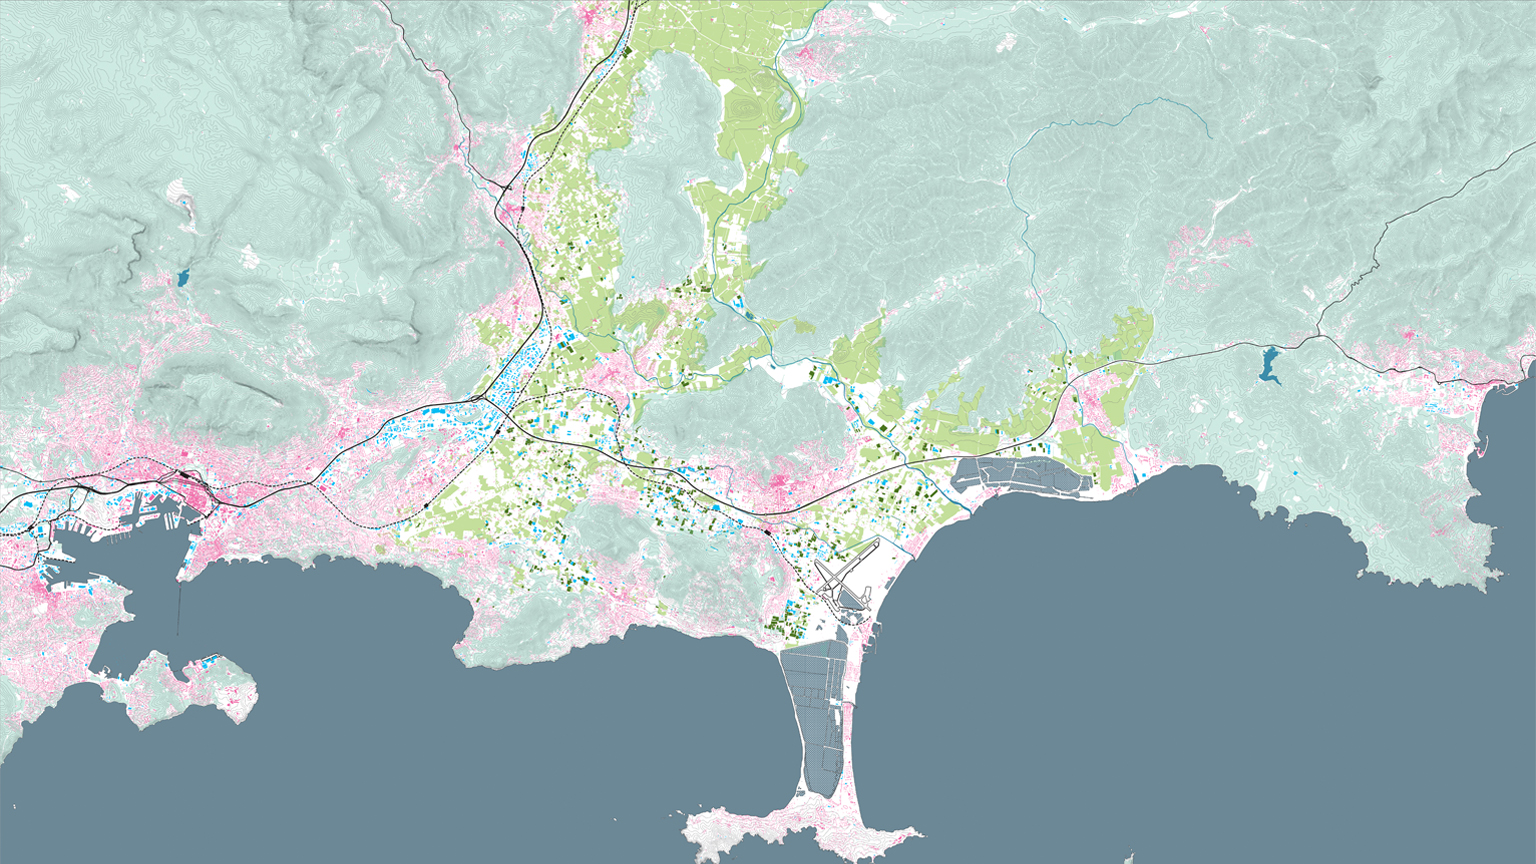 Risques d’érosion littorale : Petit-Bourg, Hyères et Lacanau